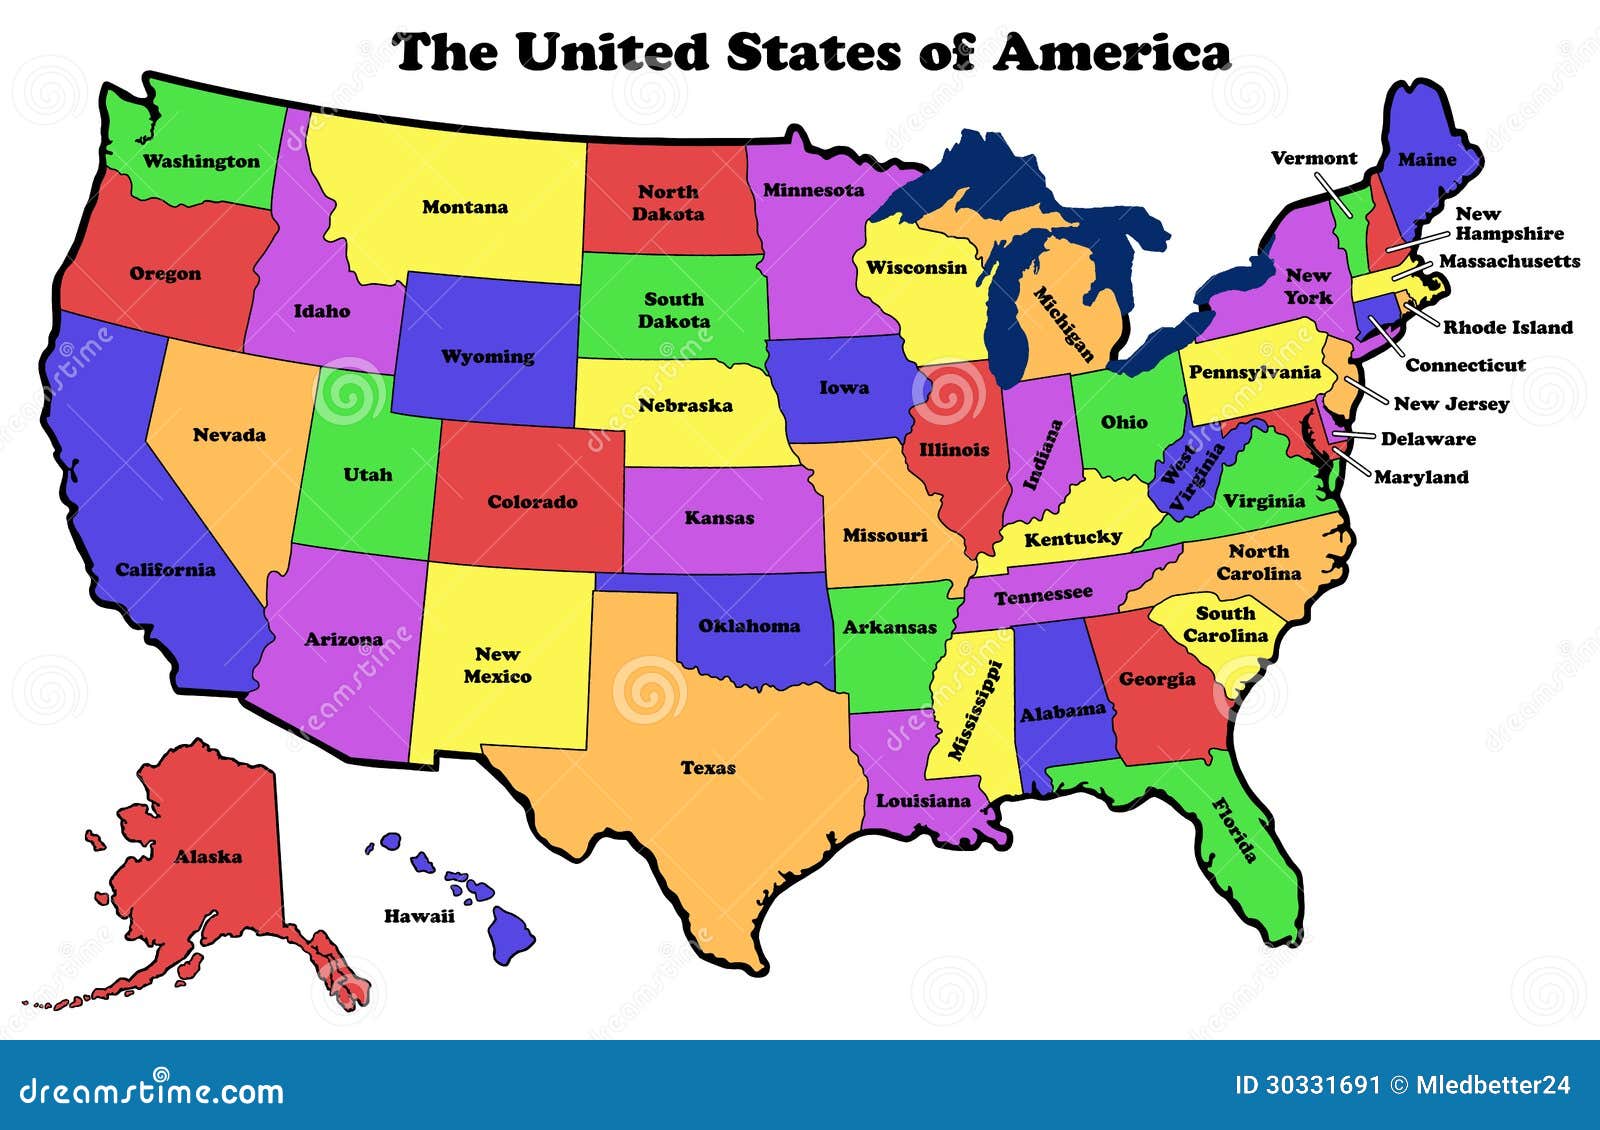 elgritosagrado11: 25 Awesome Maps United States